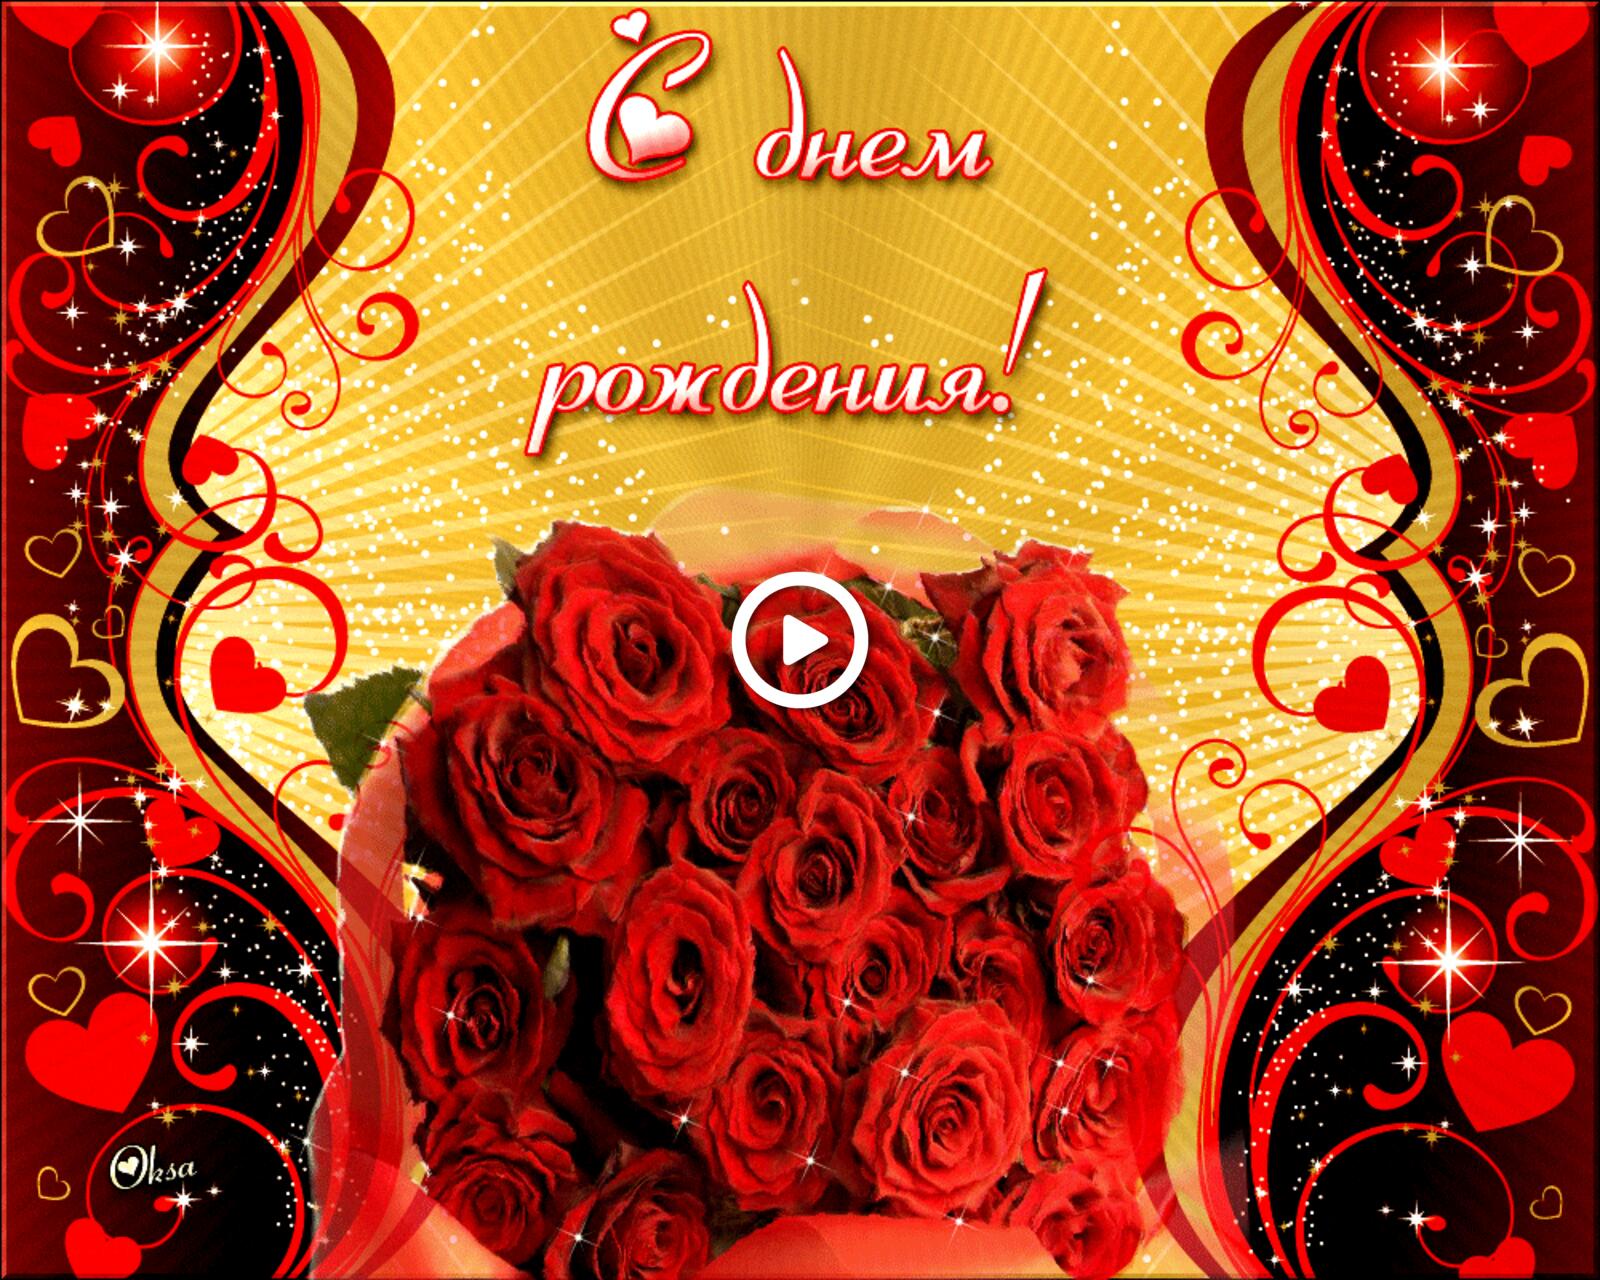 Бесплатная открытка Открытка с красными розами на день рождения